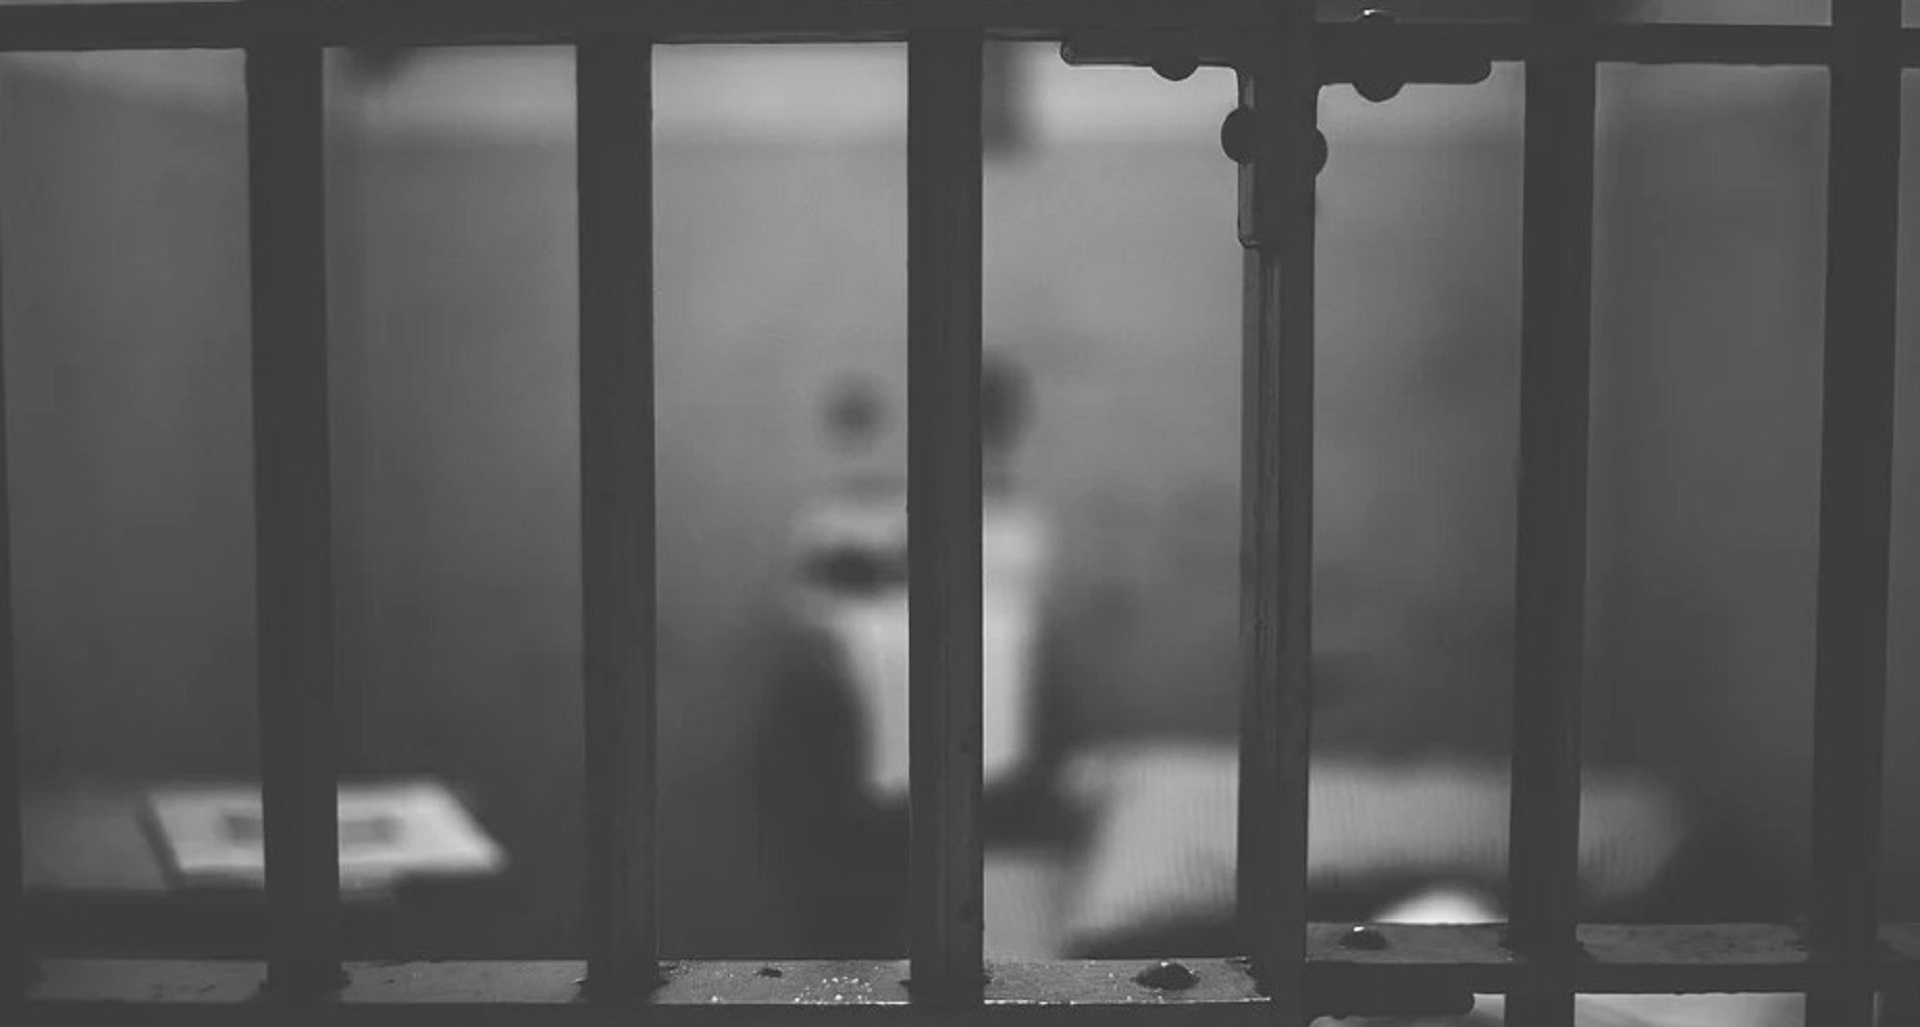 Agente di Polizia penitenziaria aggredito da detenuto: ennesimo caso